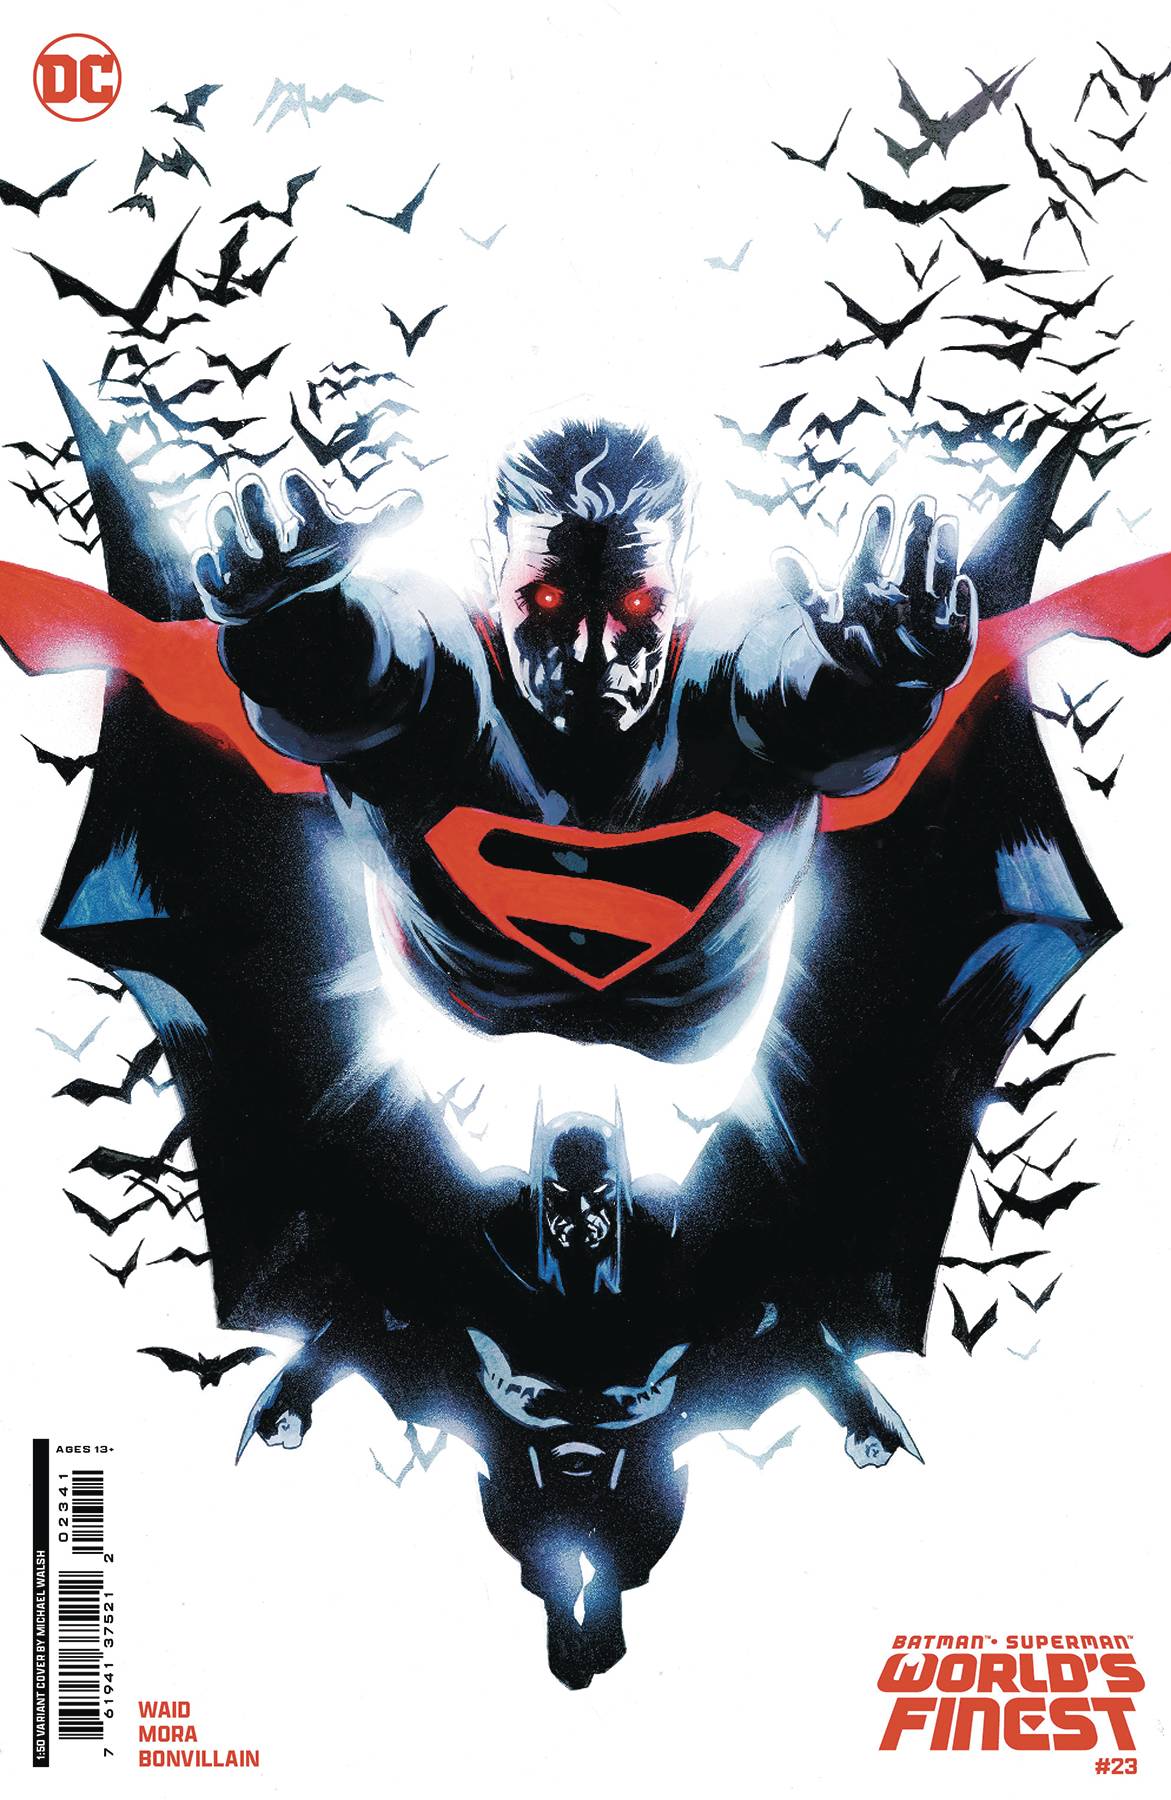 BATMAN SUPERMAN WORLDS FINEST #23 CVR E 1:50 COPY WALSH CS VAR